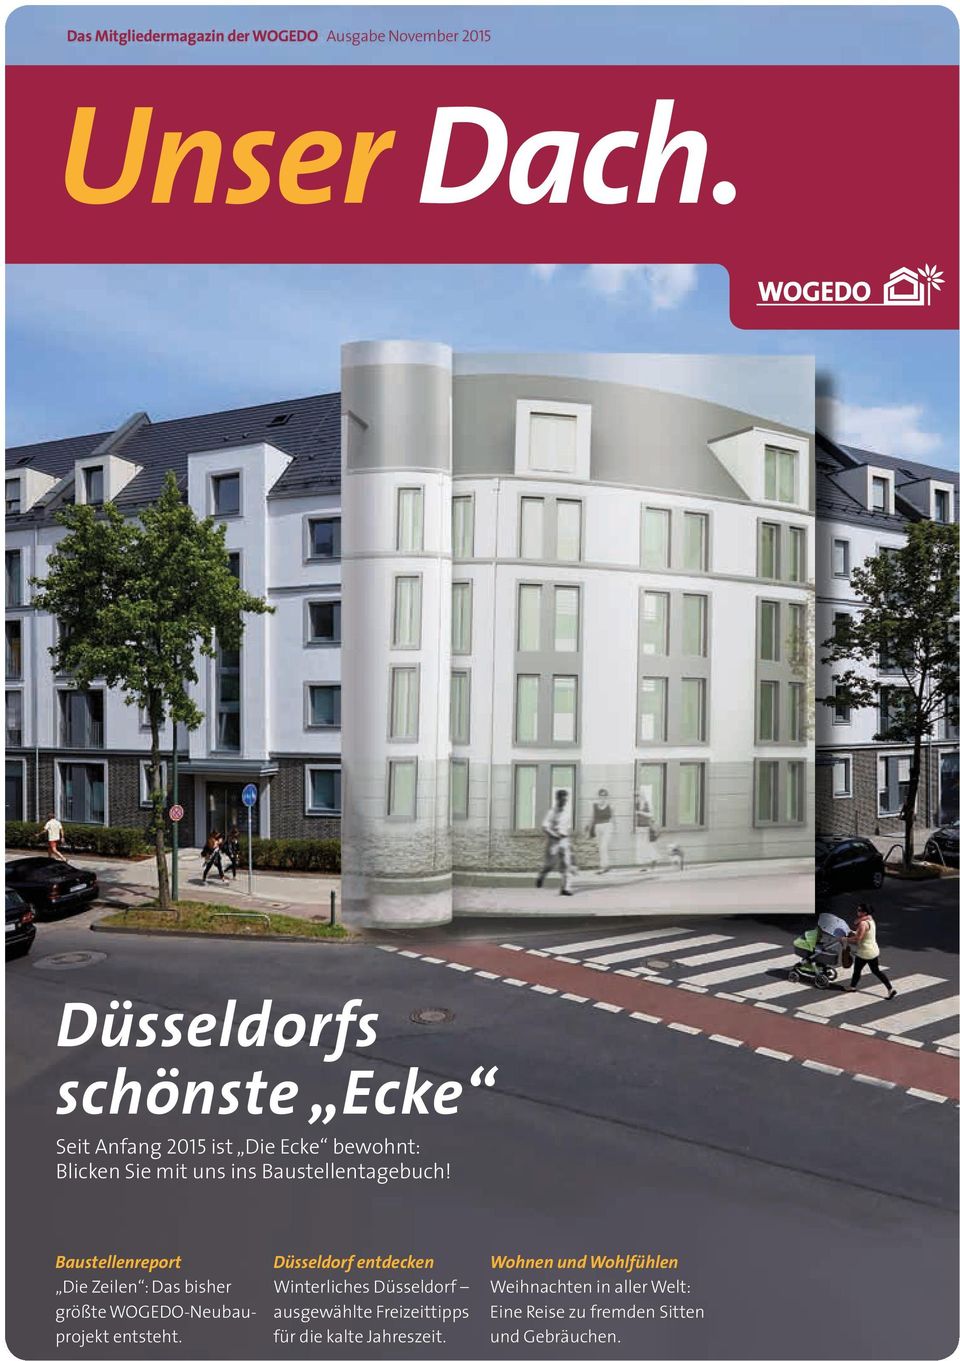 Baustellenreport Die Zeilen : Das bisher größte WOGEDO-Neubau - projekt entsteht.